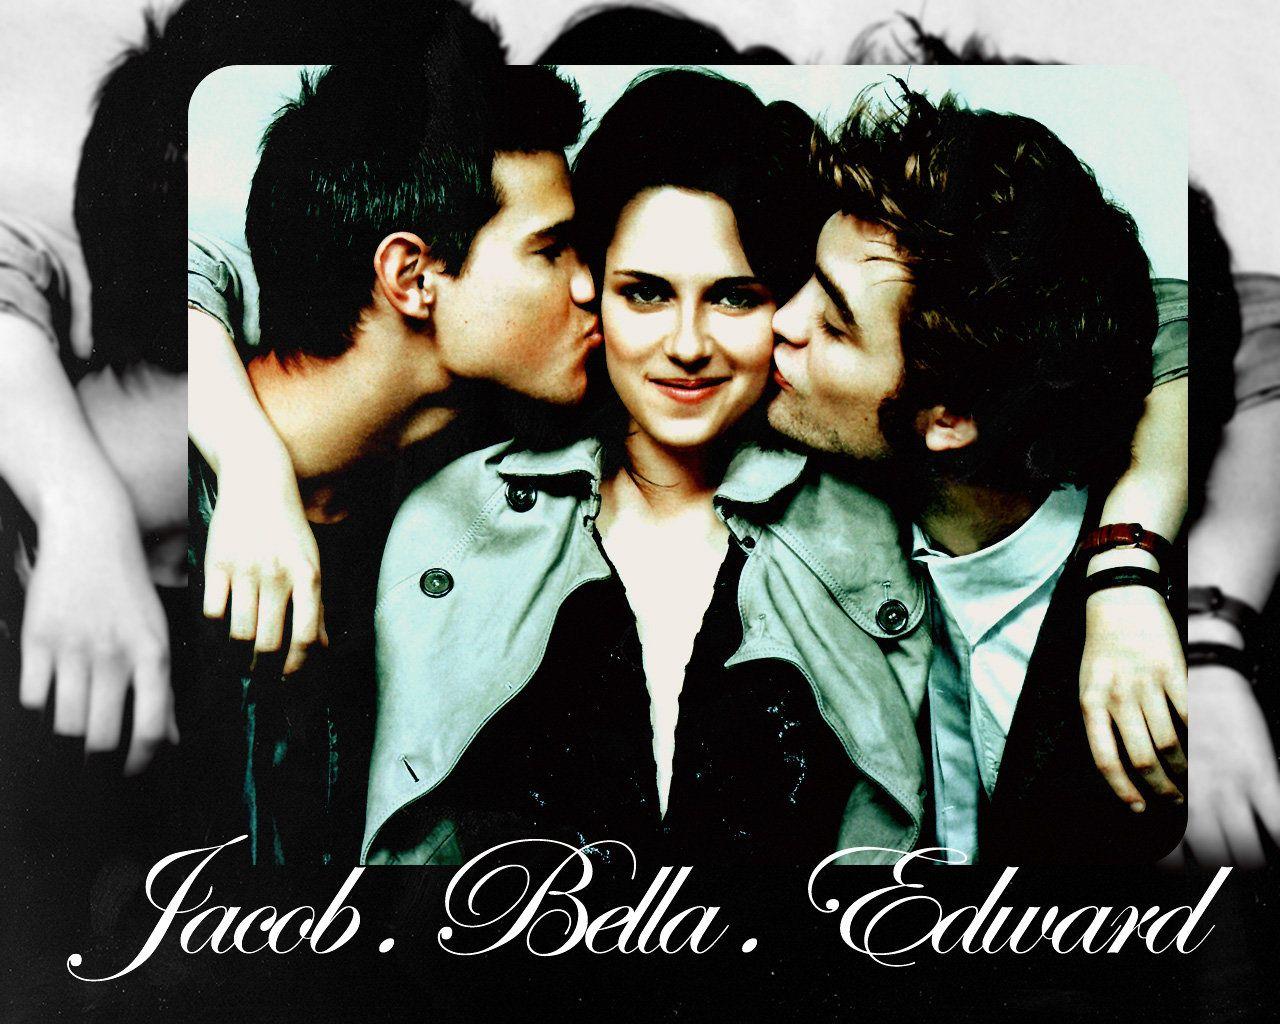 Wallpaper: Jacob.Bella.Edward